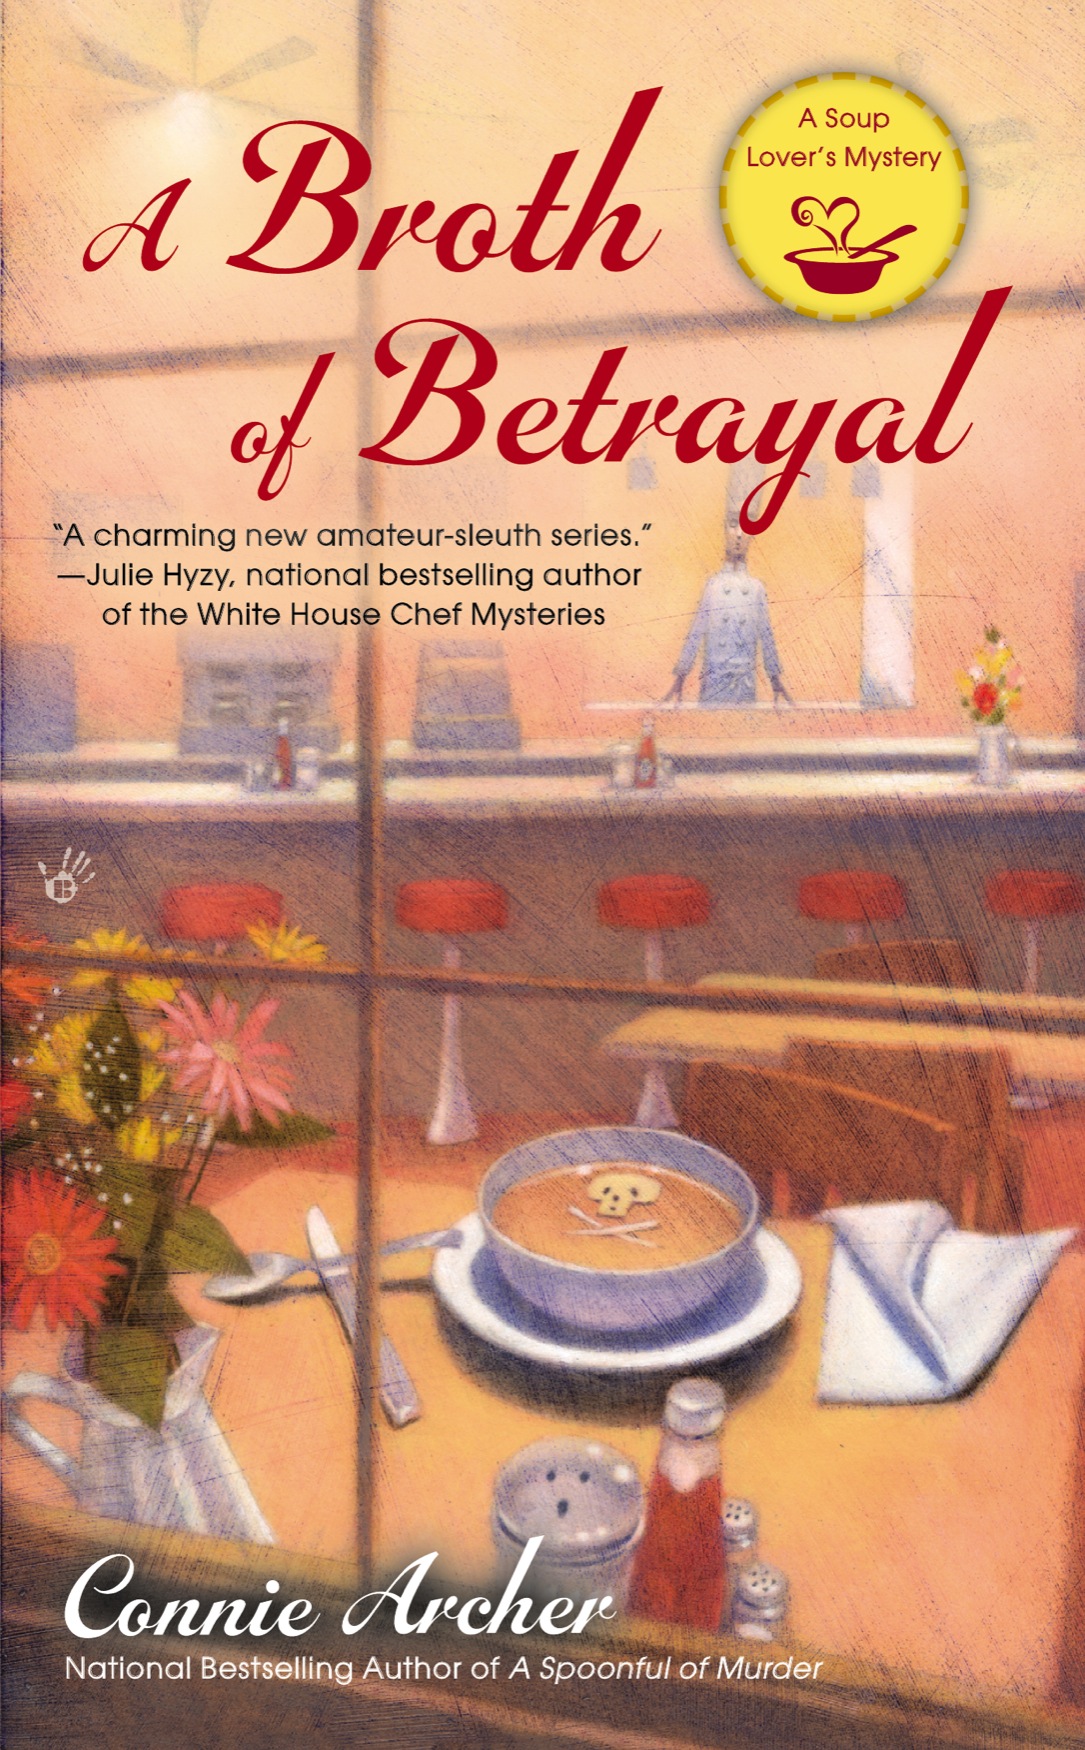 A Broth of Betrayal (2013)